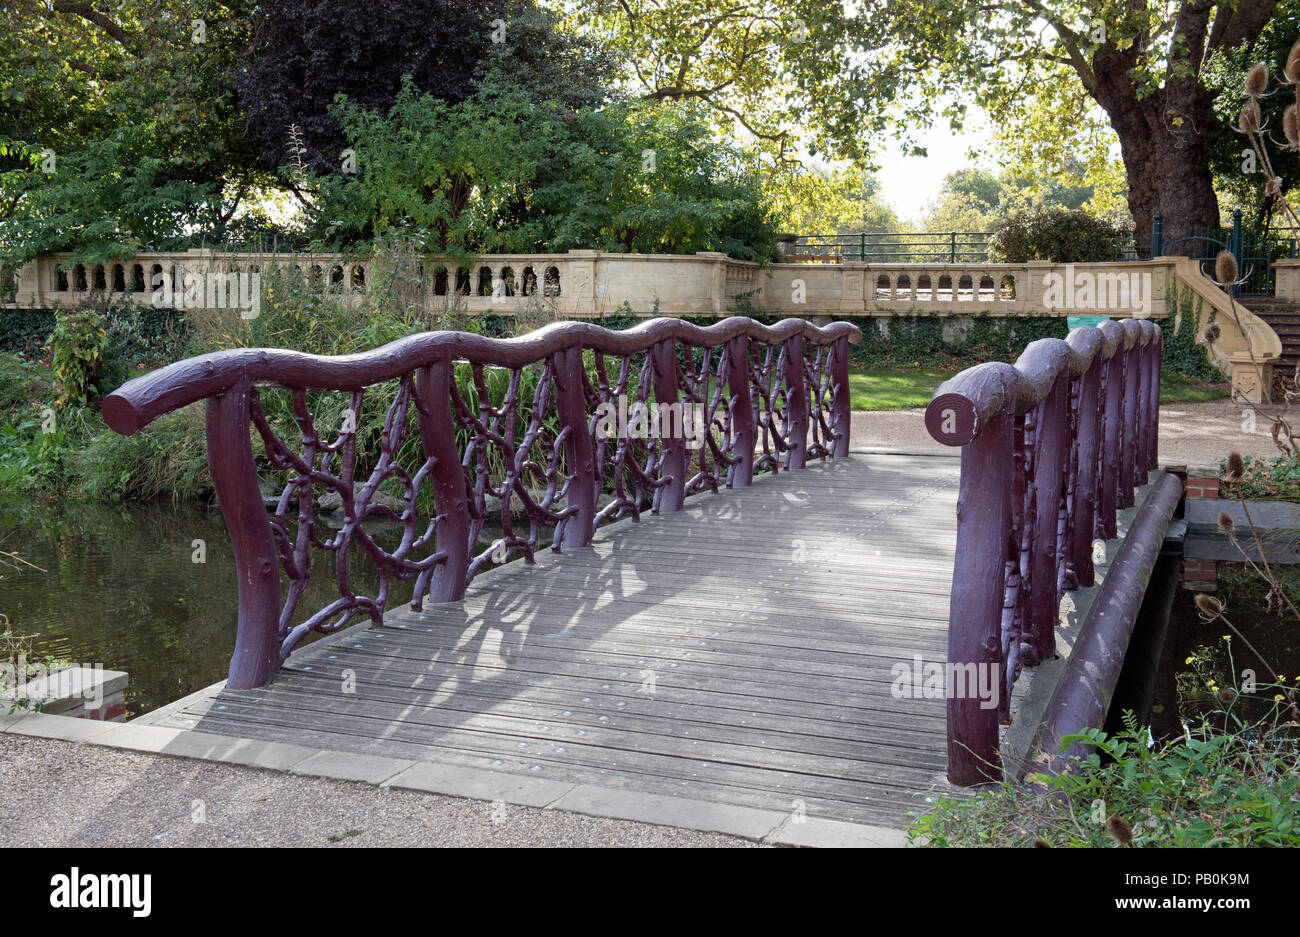 Holzbrücke, Attika aus Ästen, Bischöfe Park, Fulham London England Großbritannien UK Stockfoto